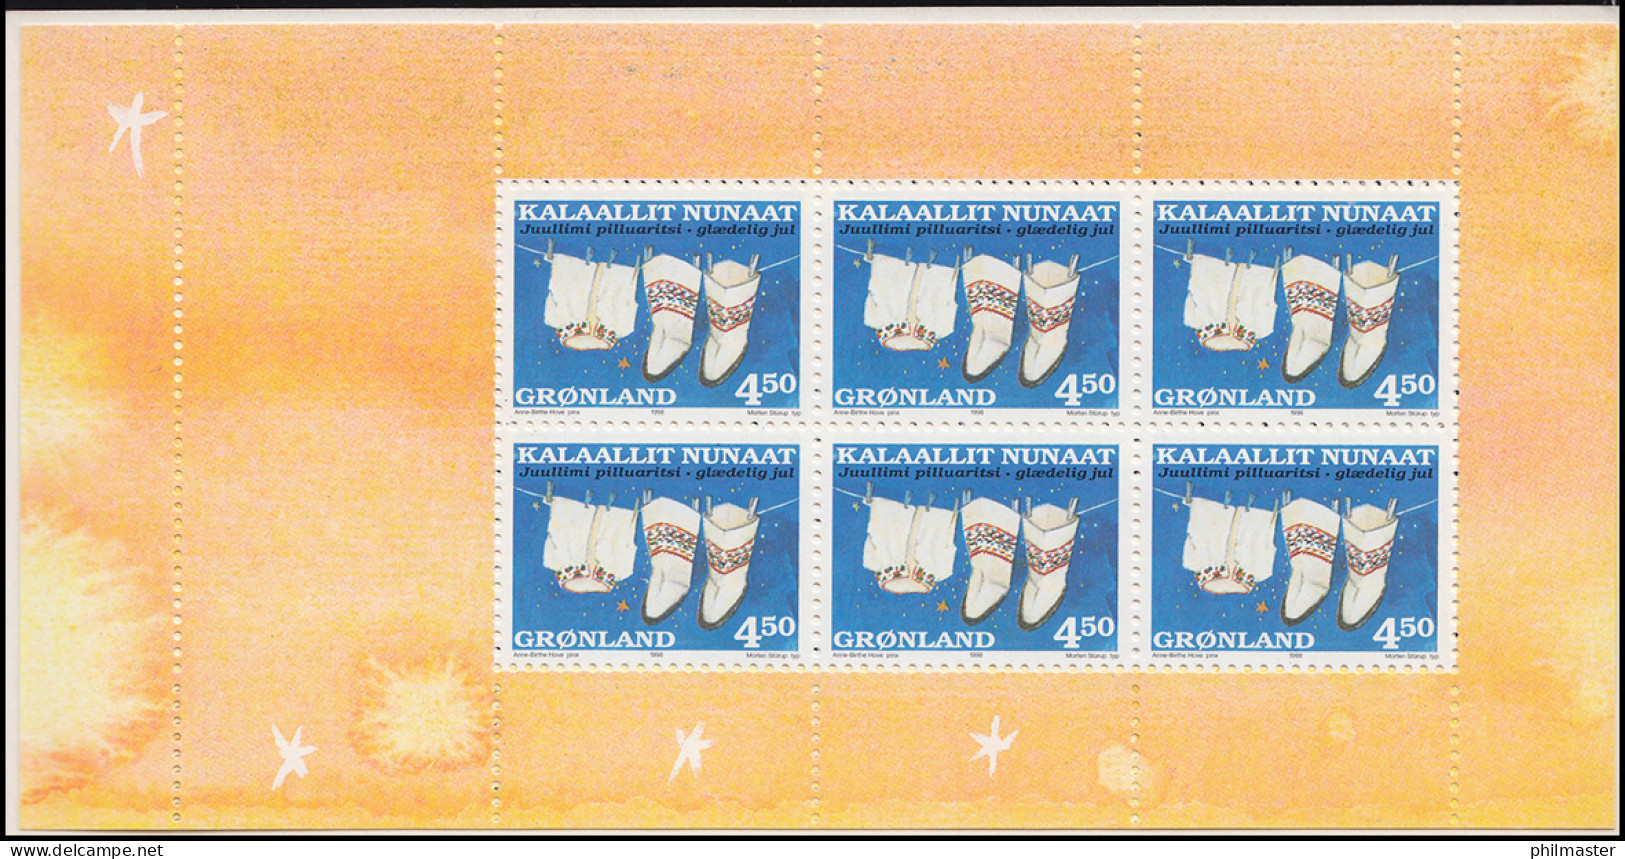 Grönland Markenheftchen 329-330 Weihnachten 1998, ** Postfrisch - Booklets